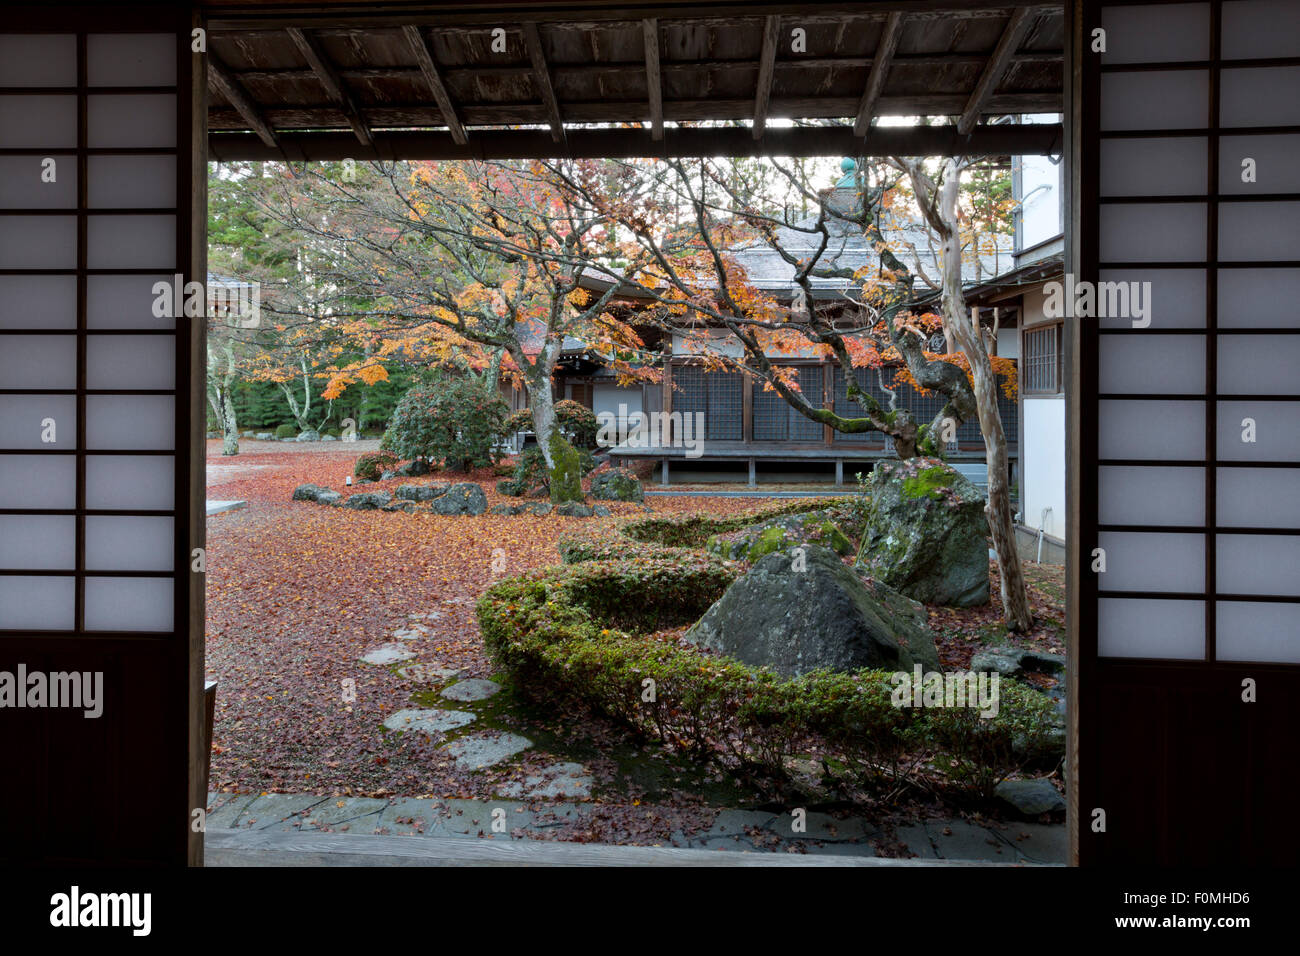 Tentokuin Buddhist temple garden (offering Shukubo - temple lodging), Koyasan (Koya-san), Kansai, Japan, Asia Stock Photo